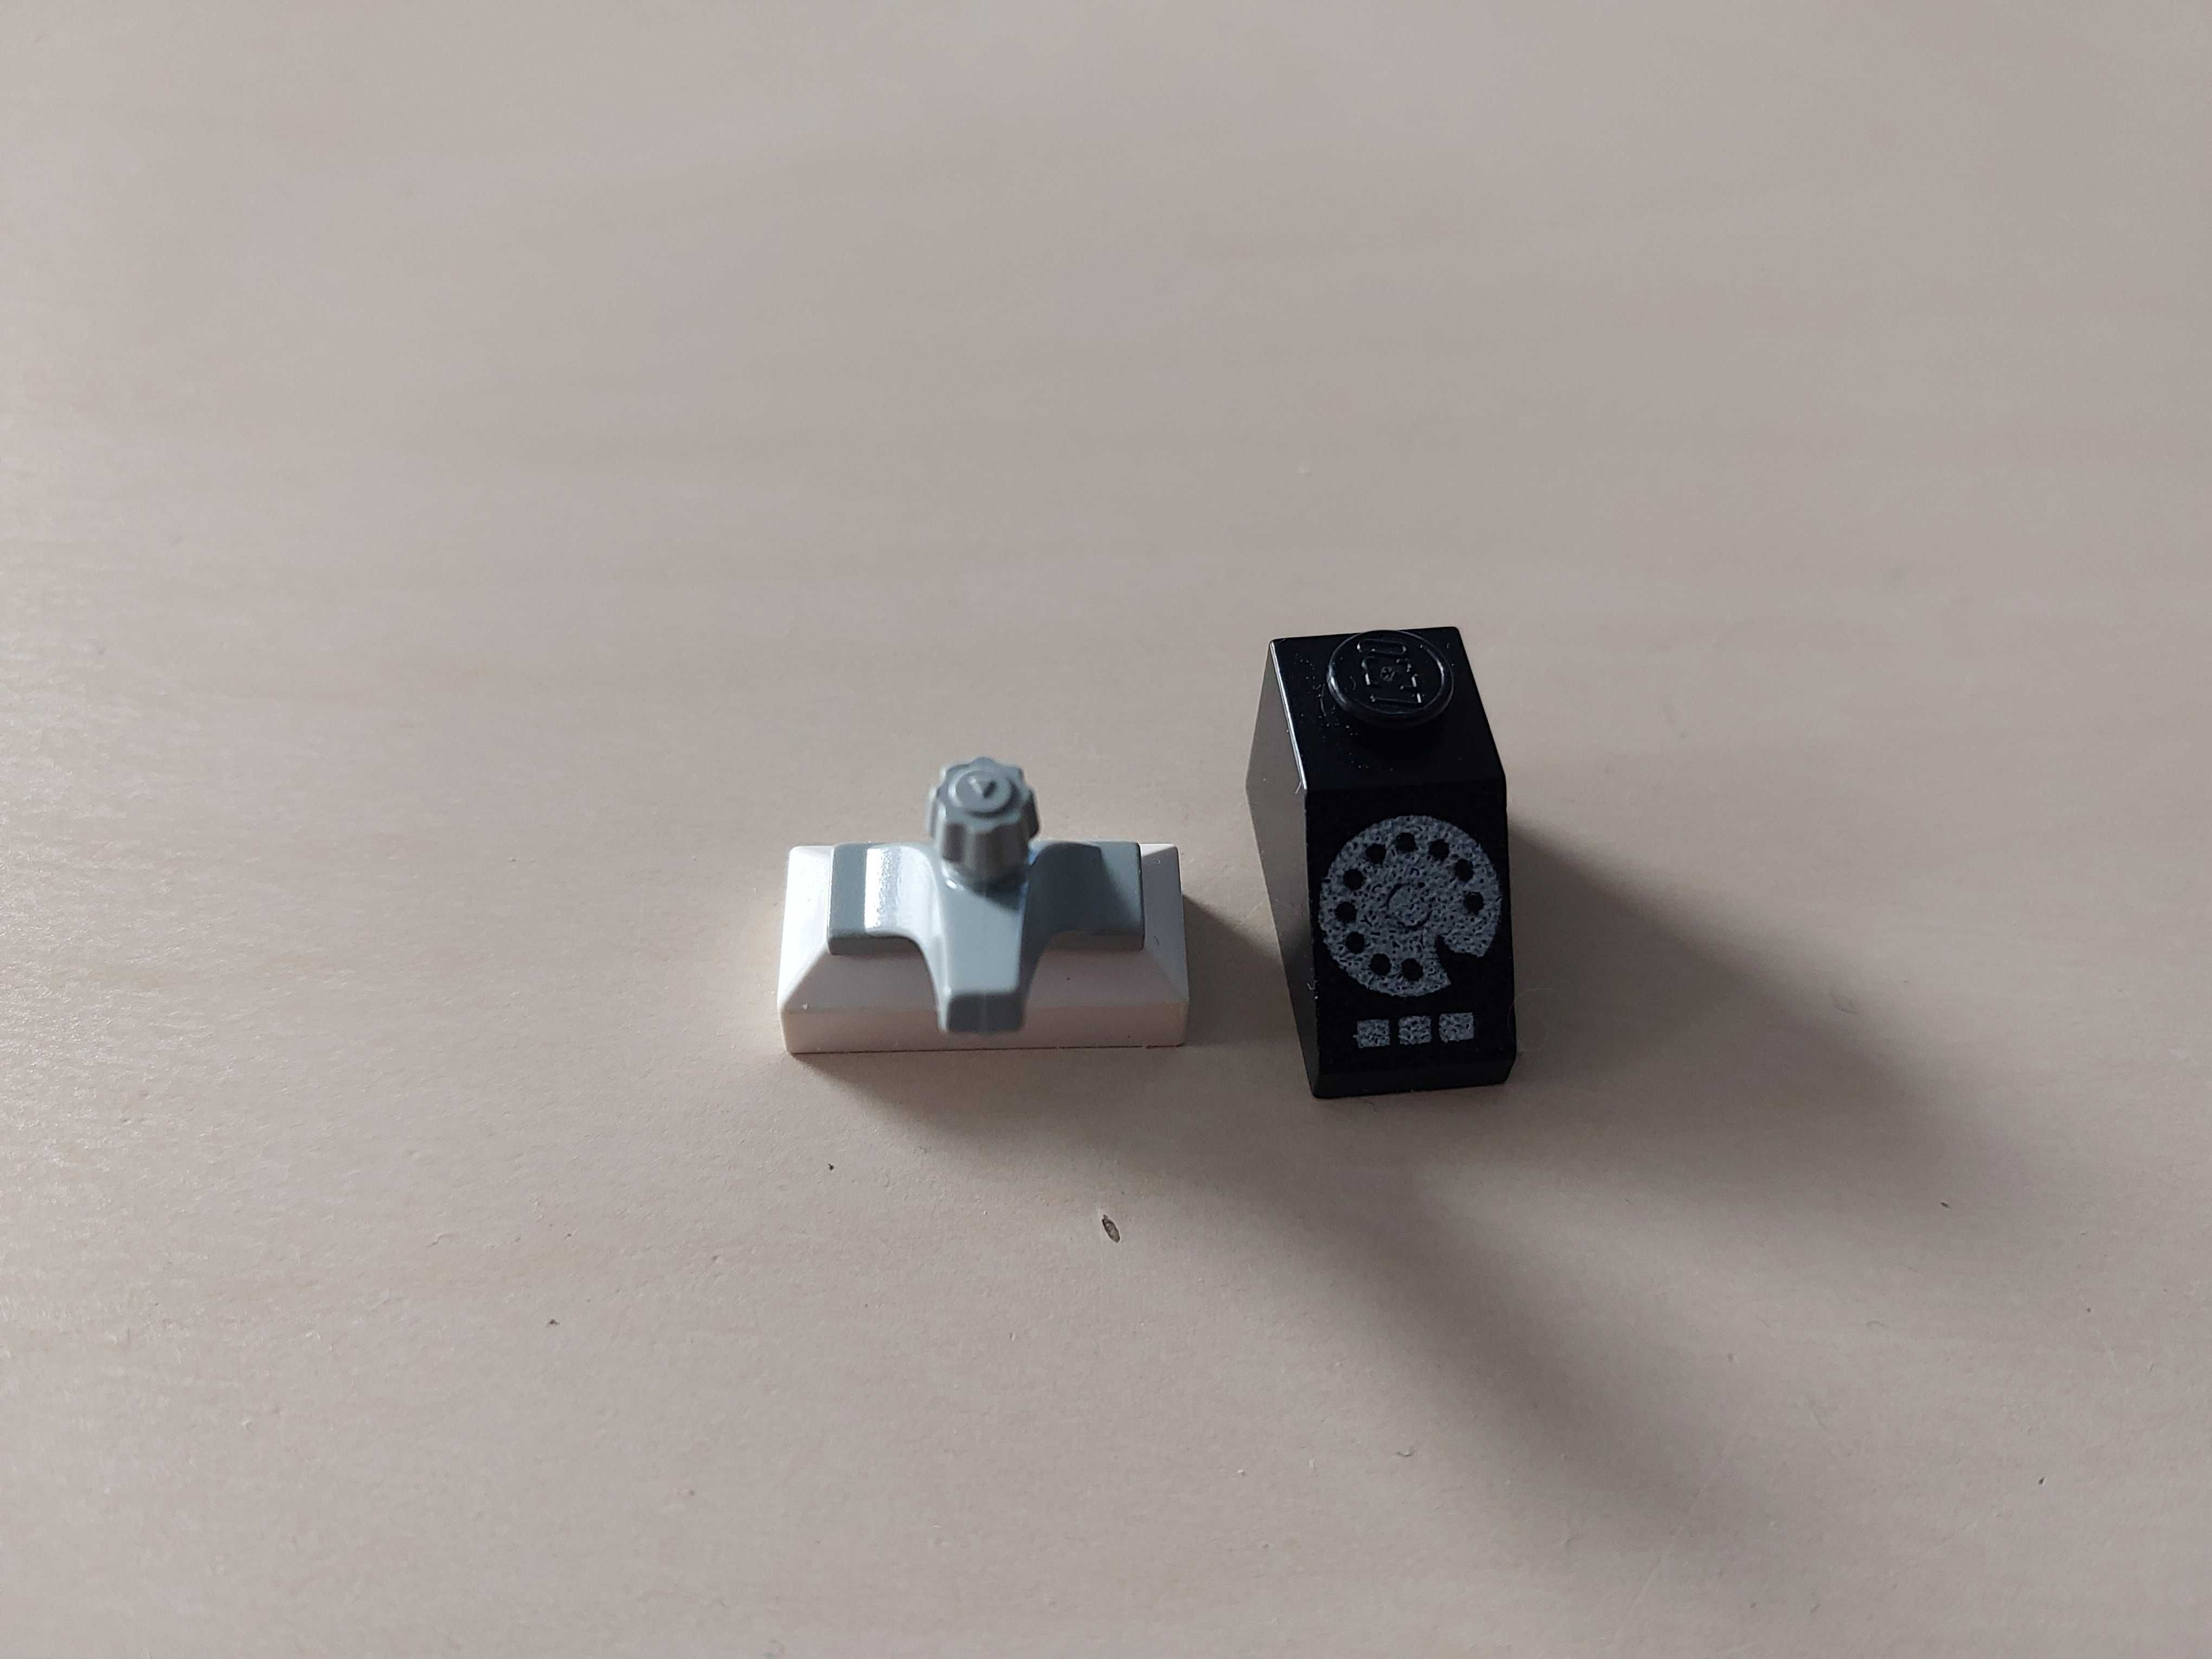 Lego kranik 69c01 + telefon 3040pb02